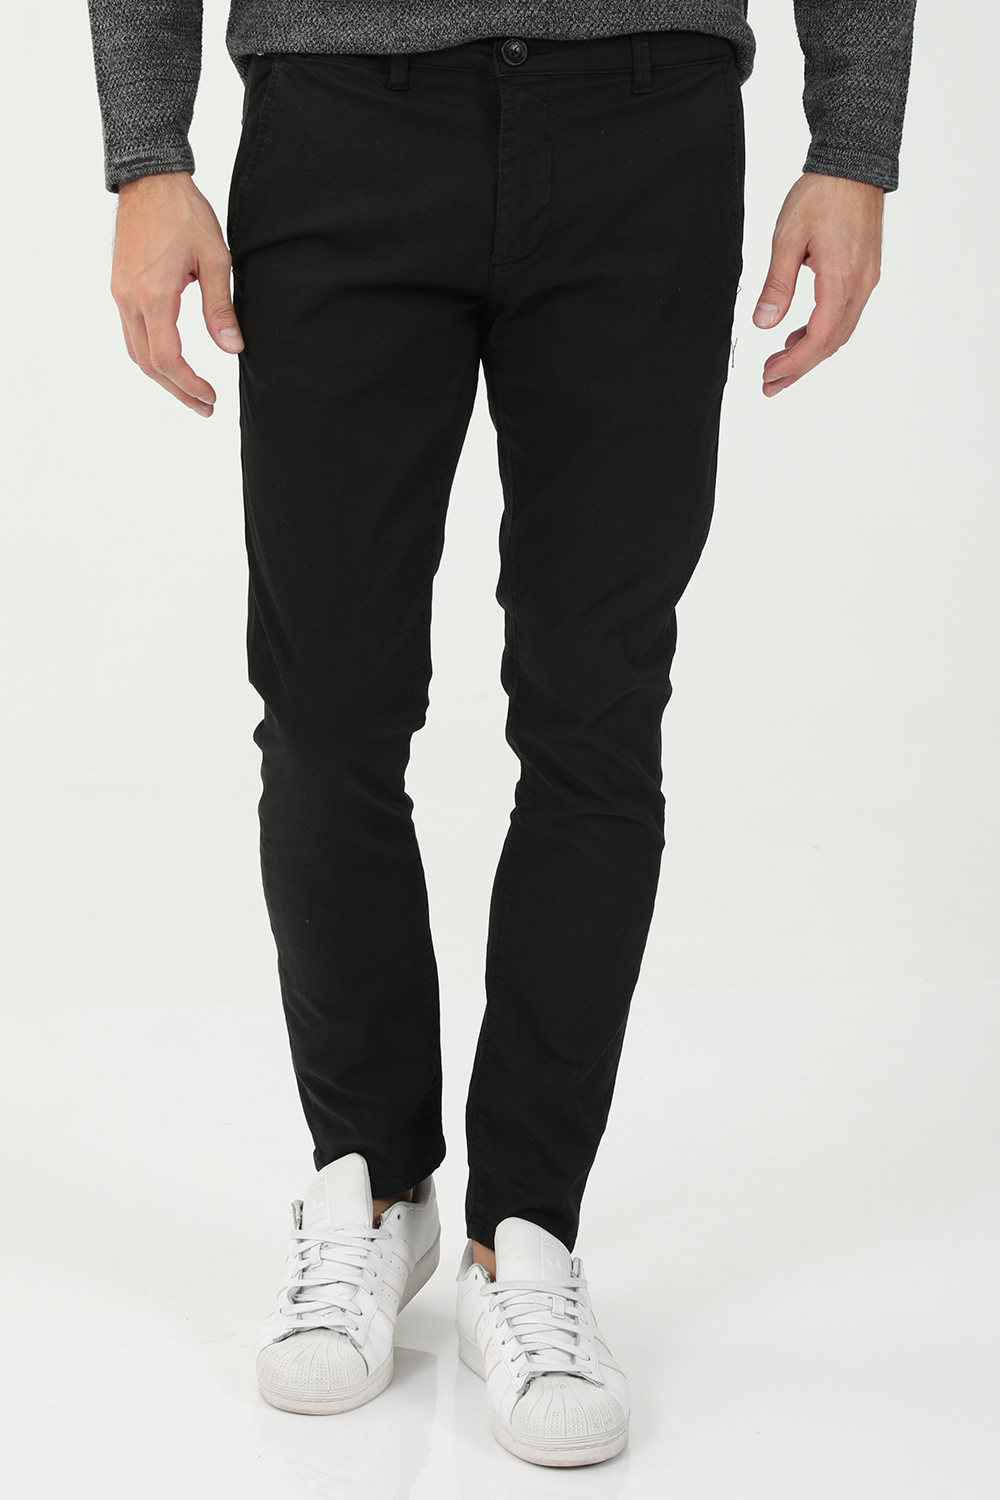 Ανδρικά/Ρούχα/Παντελόνια/Chinos GABBA - Ανδρικό chino παντελόνι GABBA Paul K3280 Dale μαύρο